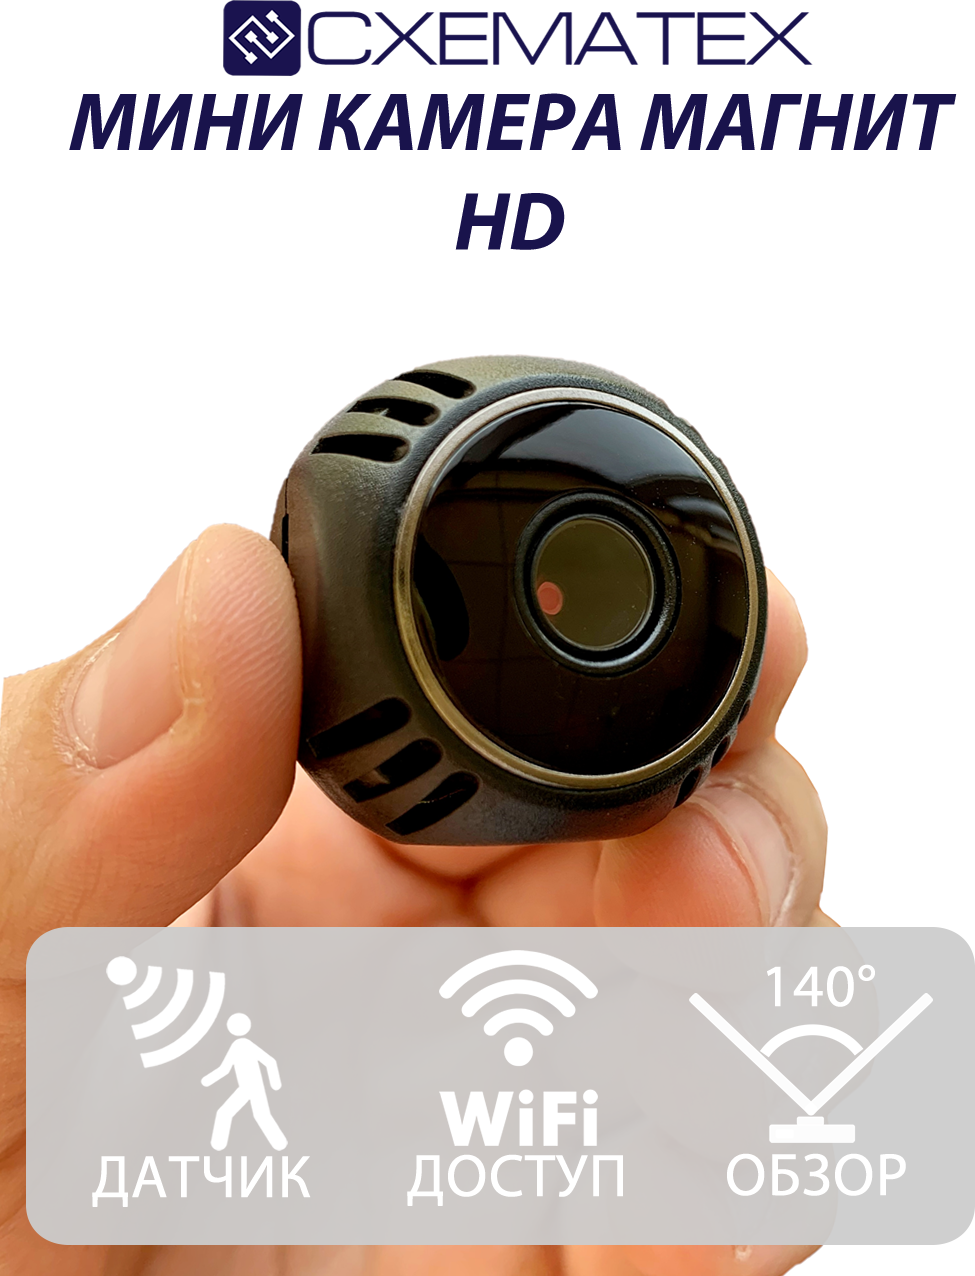 Самая Маленькая Беспроводная Камера Магнит W8 / Камера Wi-Fi / 3 Суток На Аккумуляторе